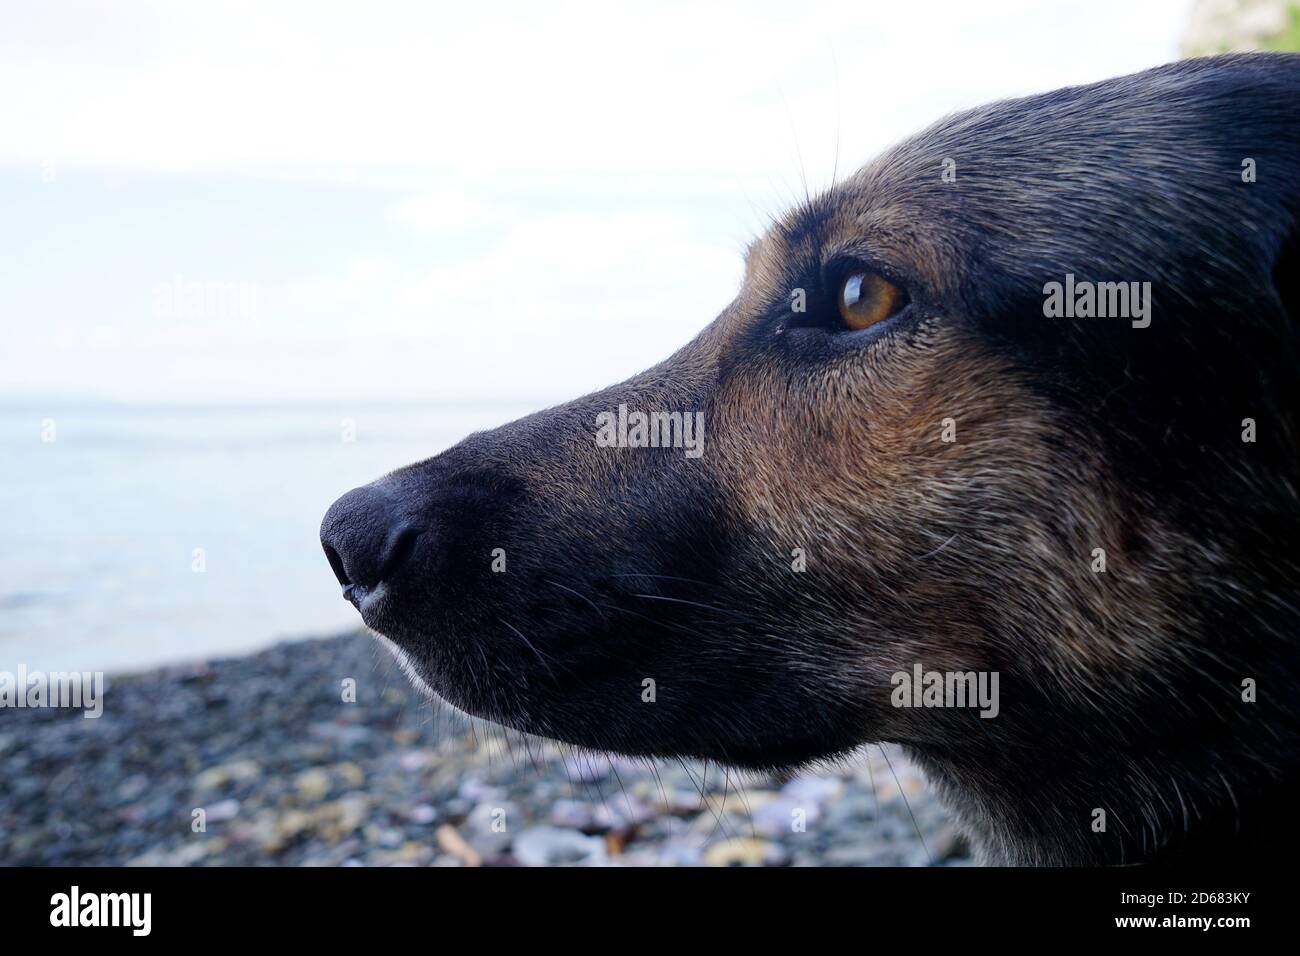 Un beau chien, un jeune chien berger se trouve soigneusement sur la mer et regarde attentivement vers l'eau Banque D'Images